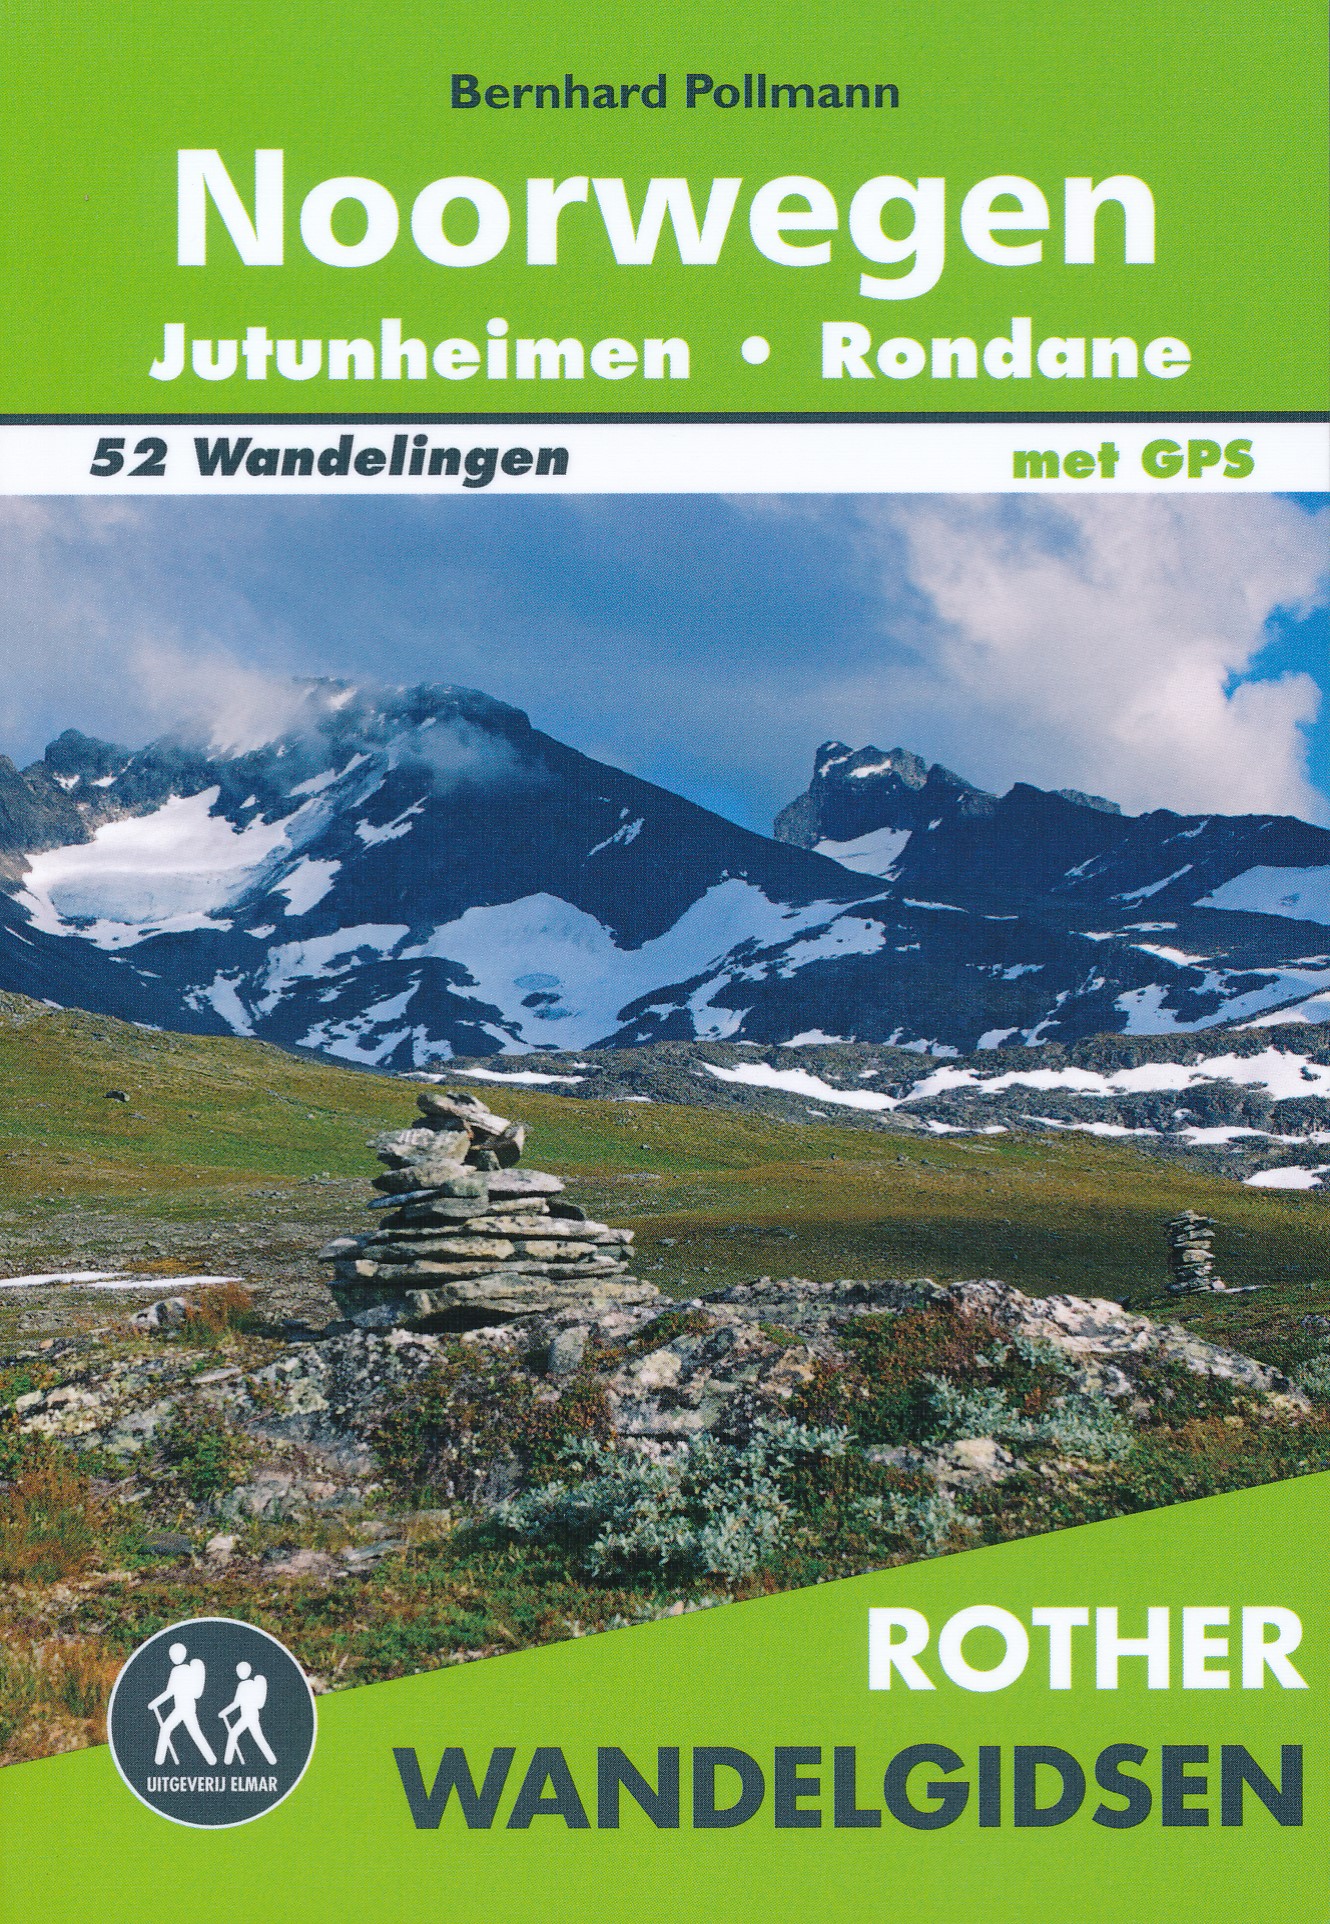 Wandelgids Noorwegen - Jotunheimen - Rondane | Elmar de zwerver